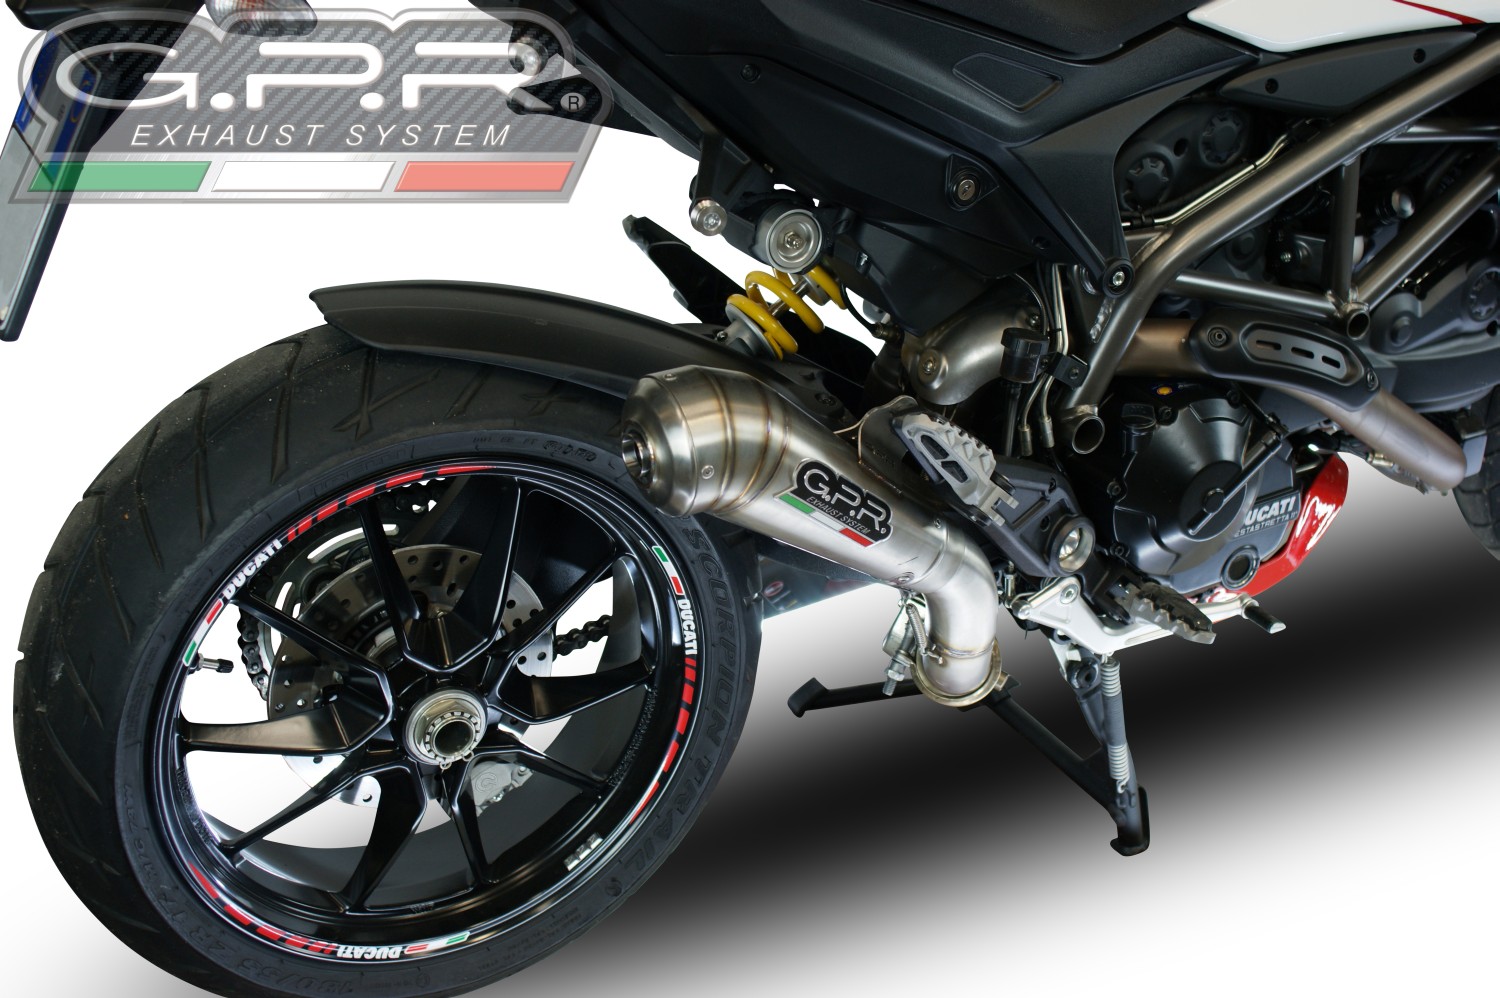  Ducati Hyperstrada 939 2016-19 e4 